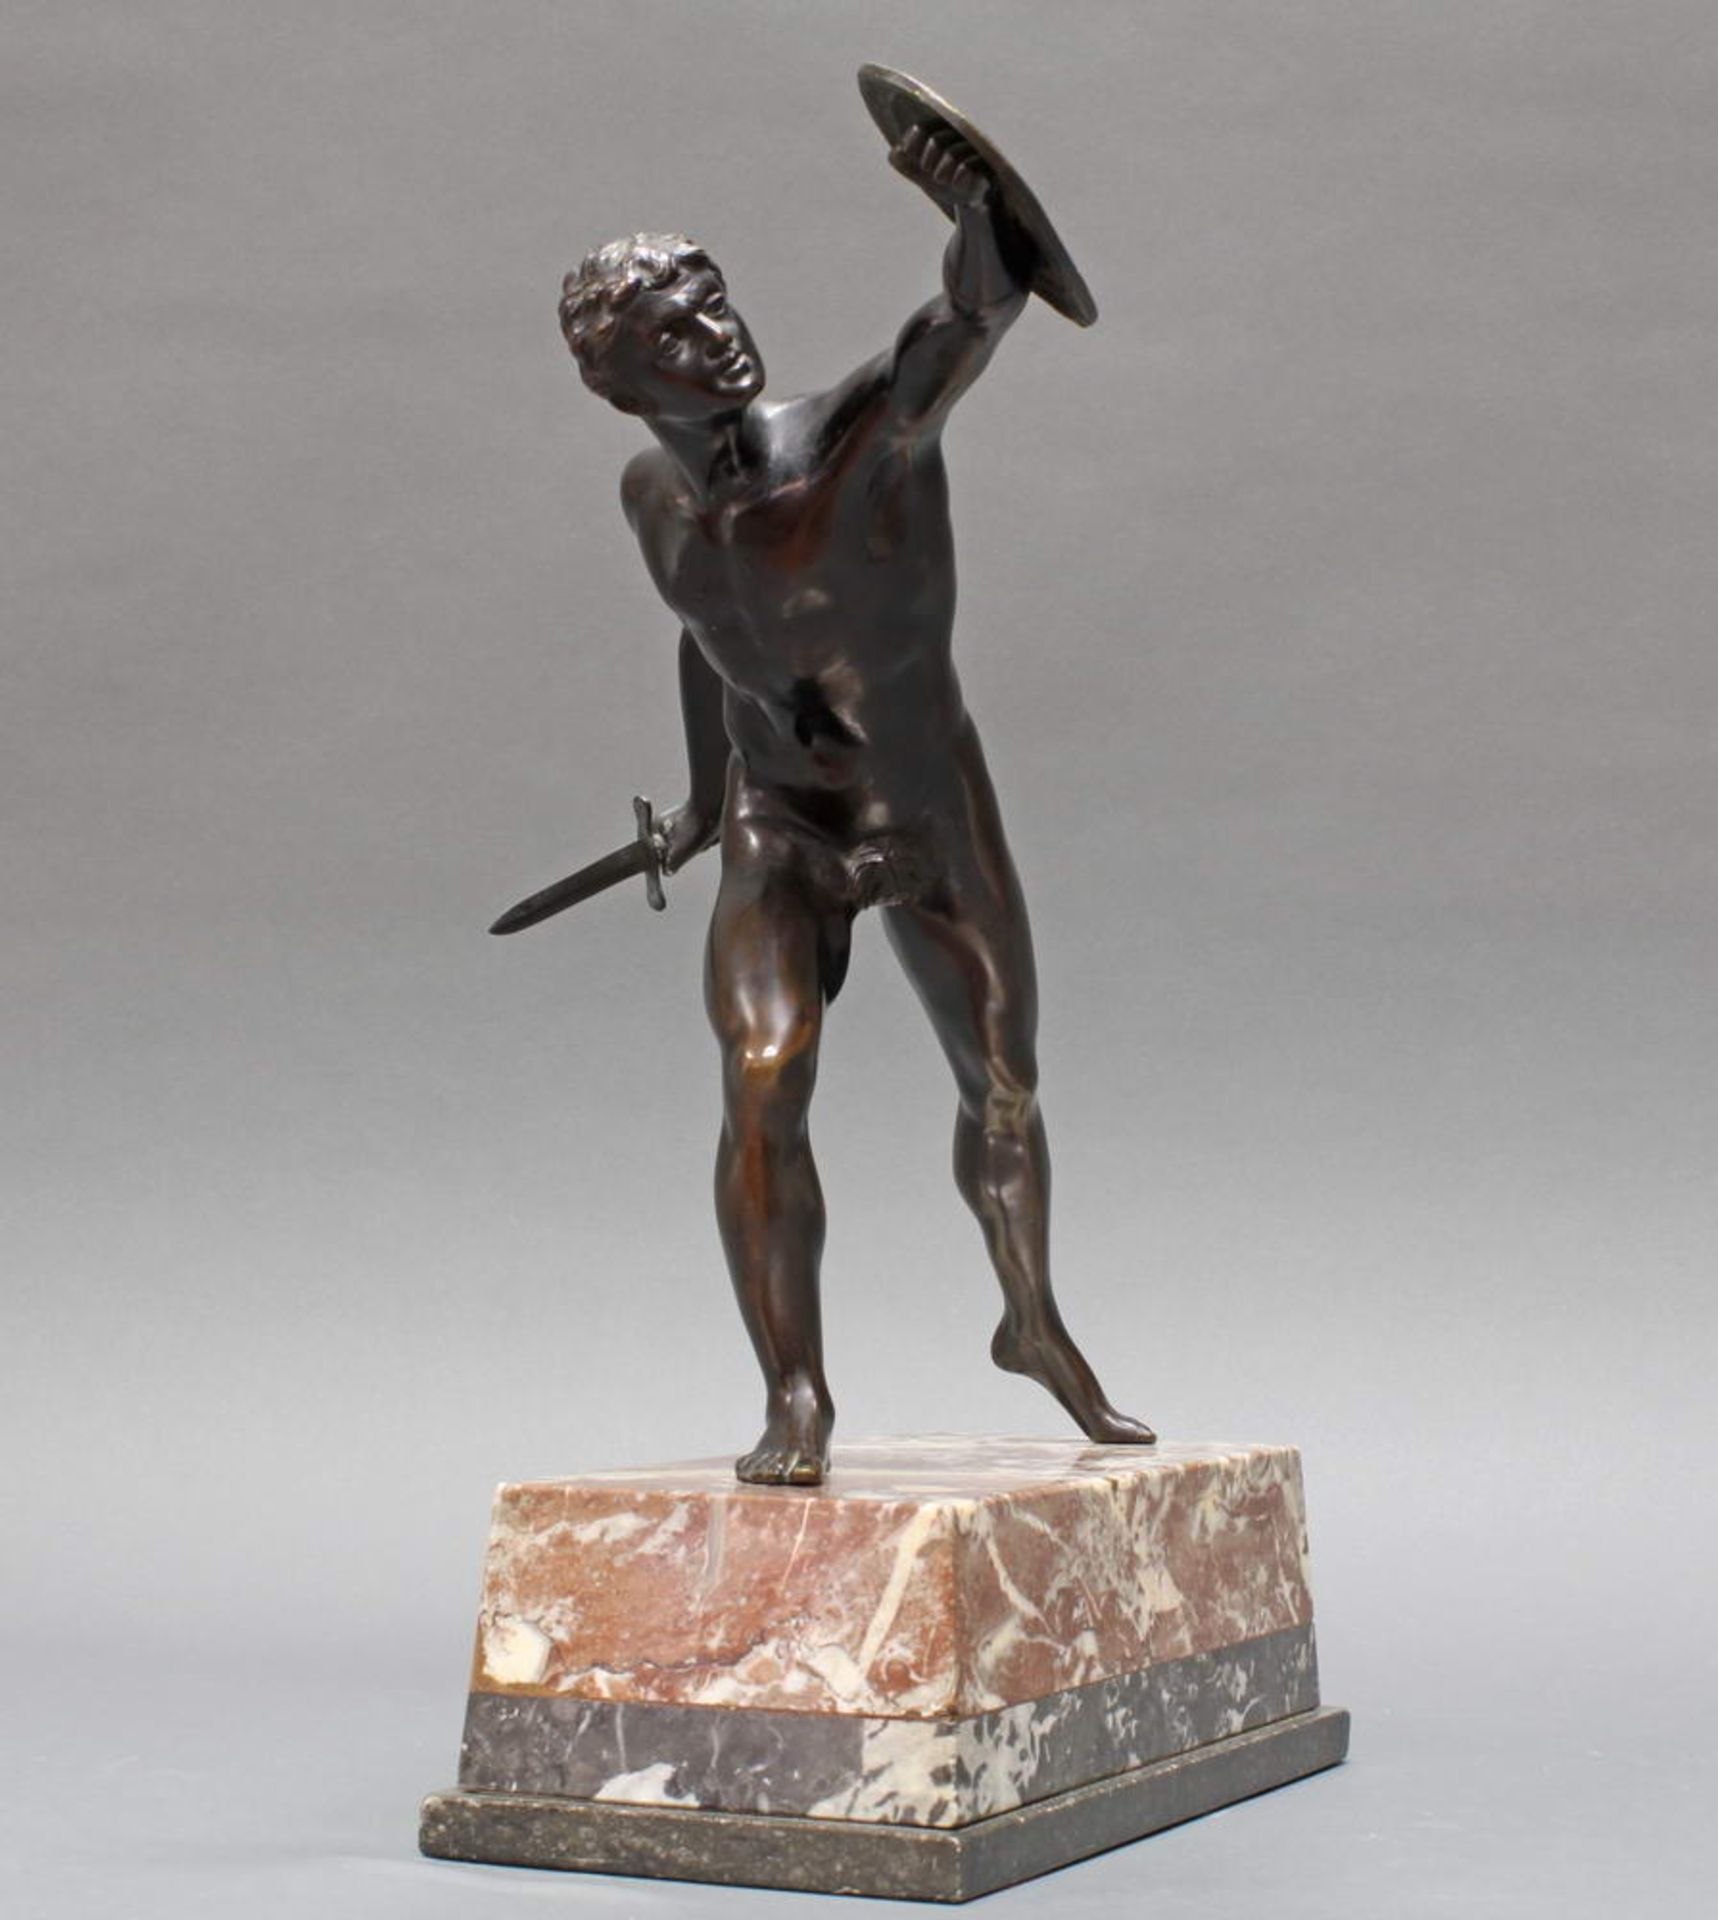 Bronze, dunkelbraun patiniert, "Borghesischer Fechter", nach der antiken Figur, auf Steinsockel,